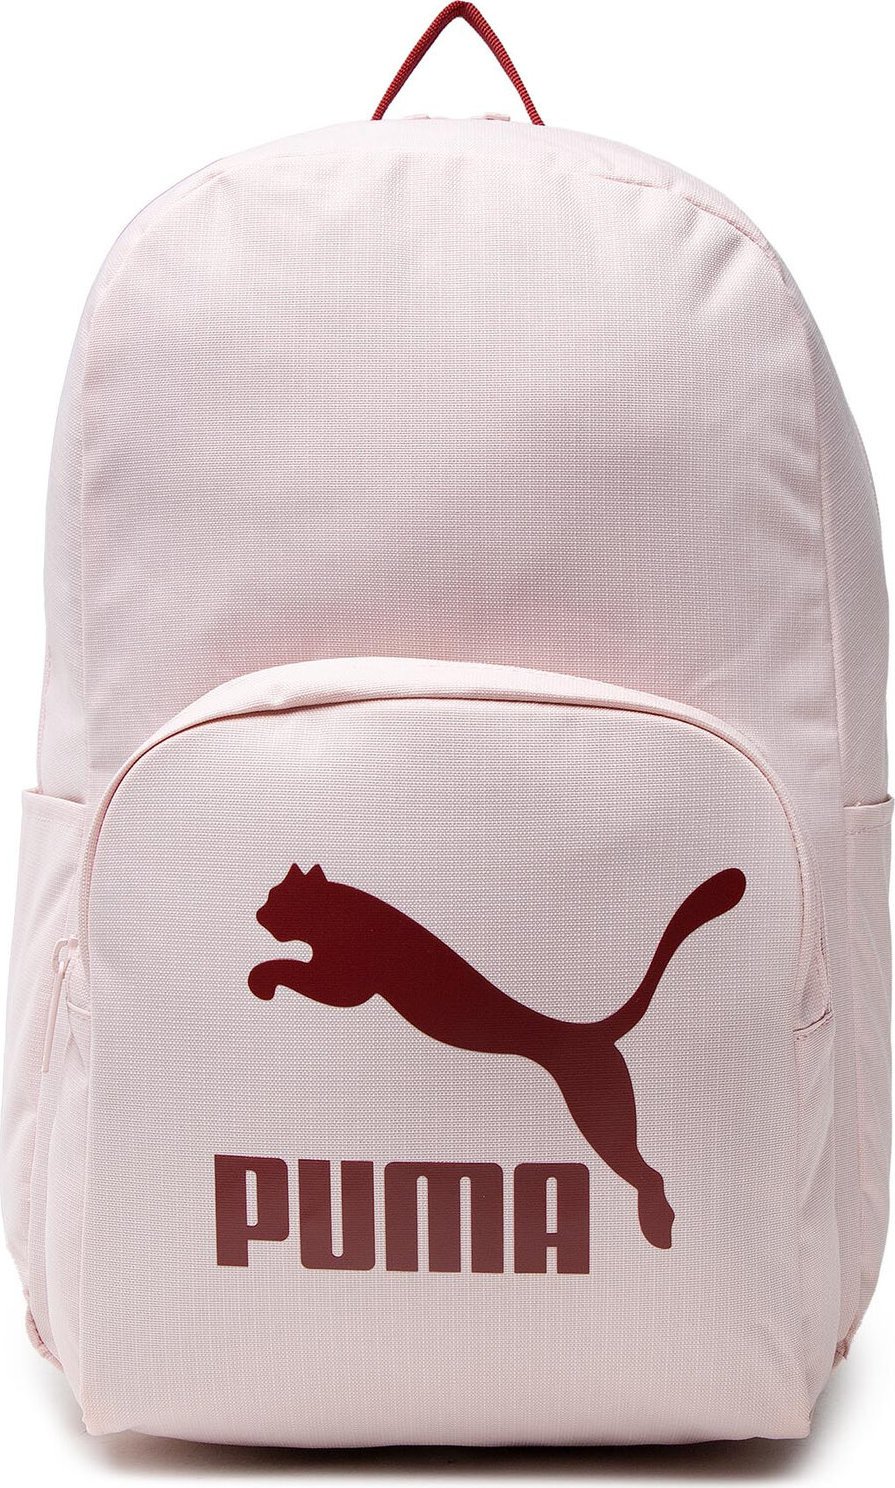 Batoh Puma Originals Urban Backpack 078480 02 Lotus